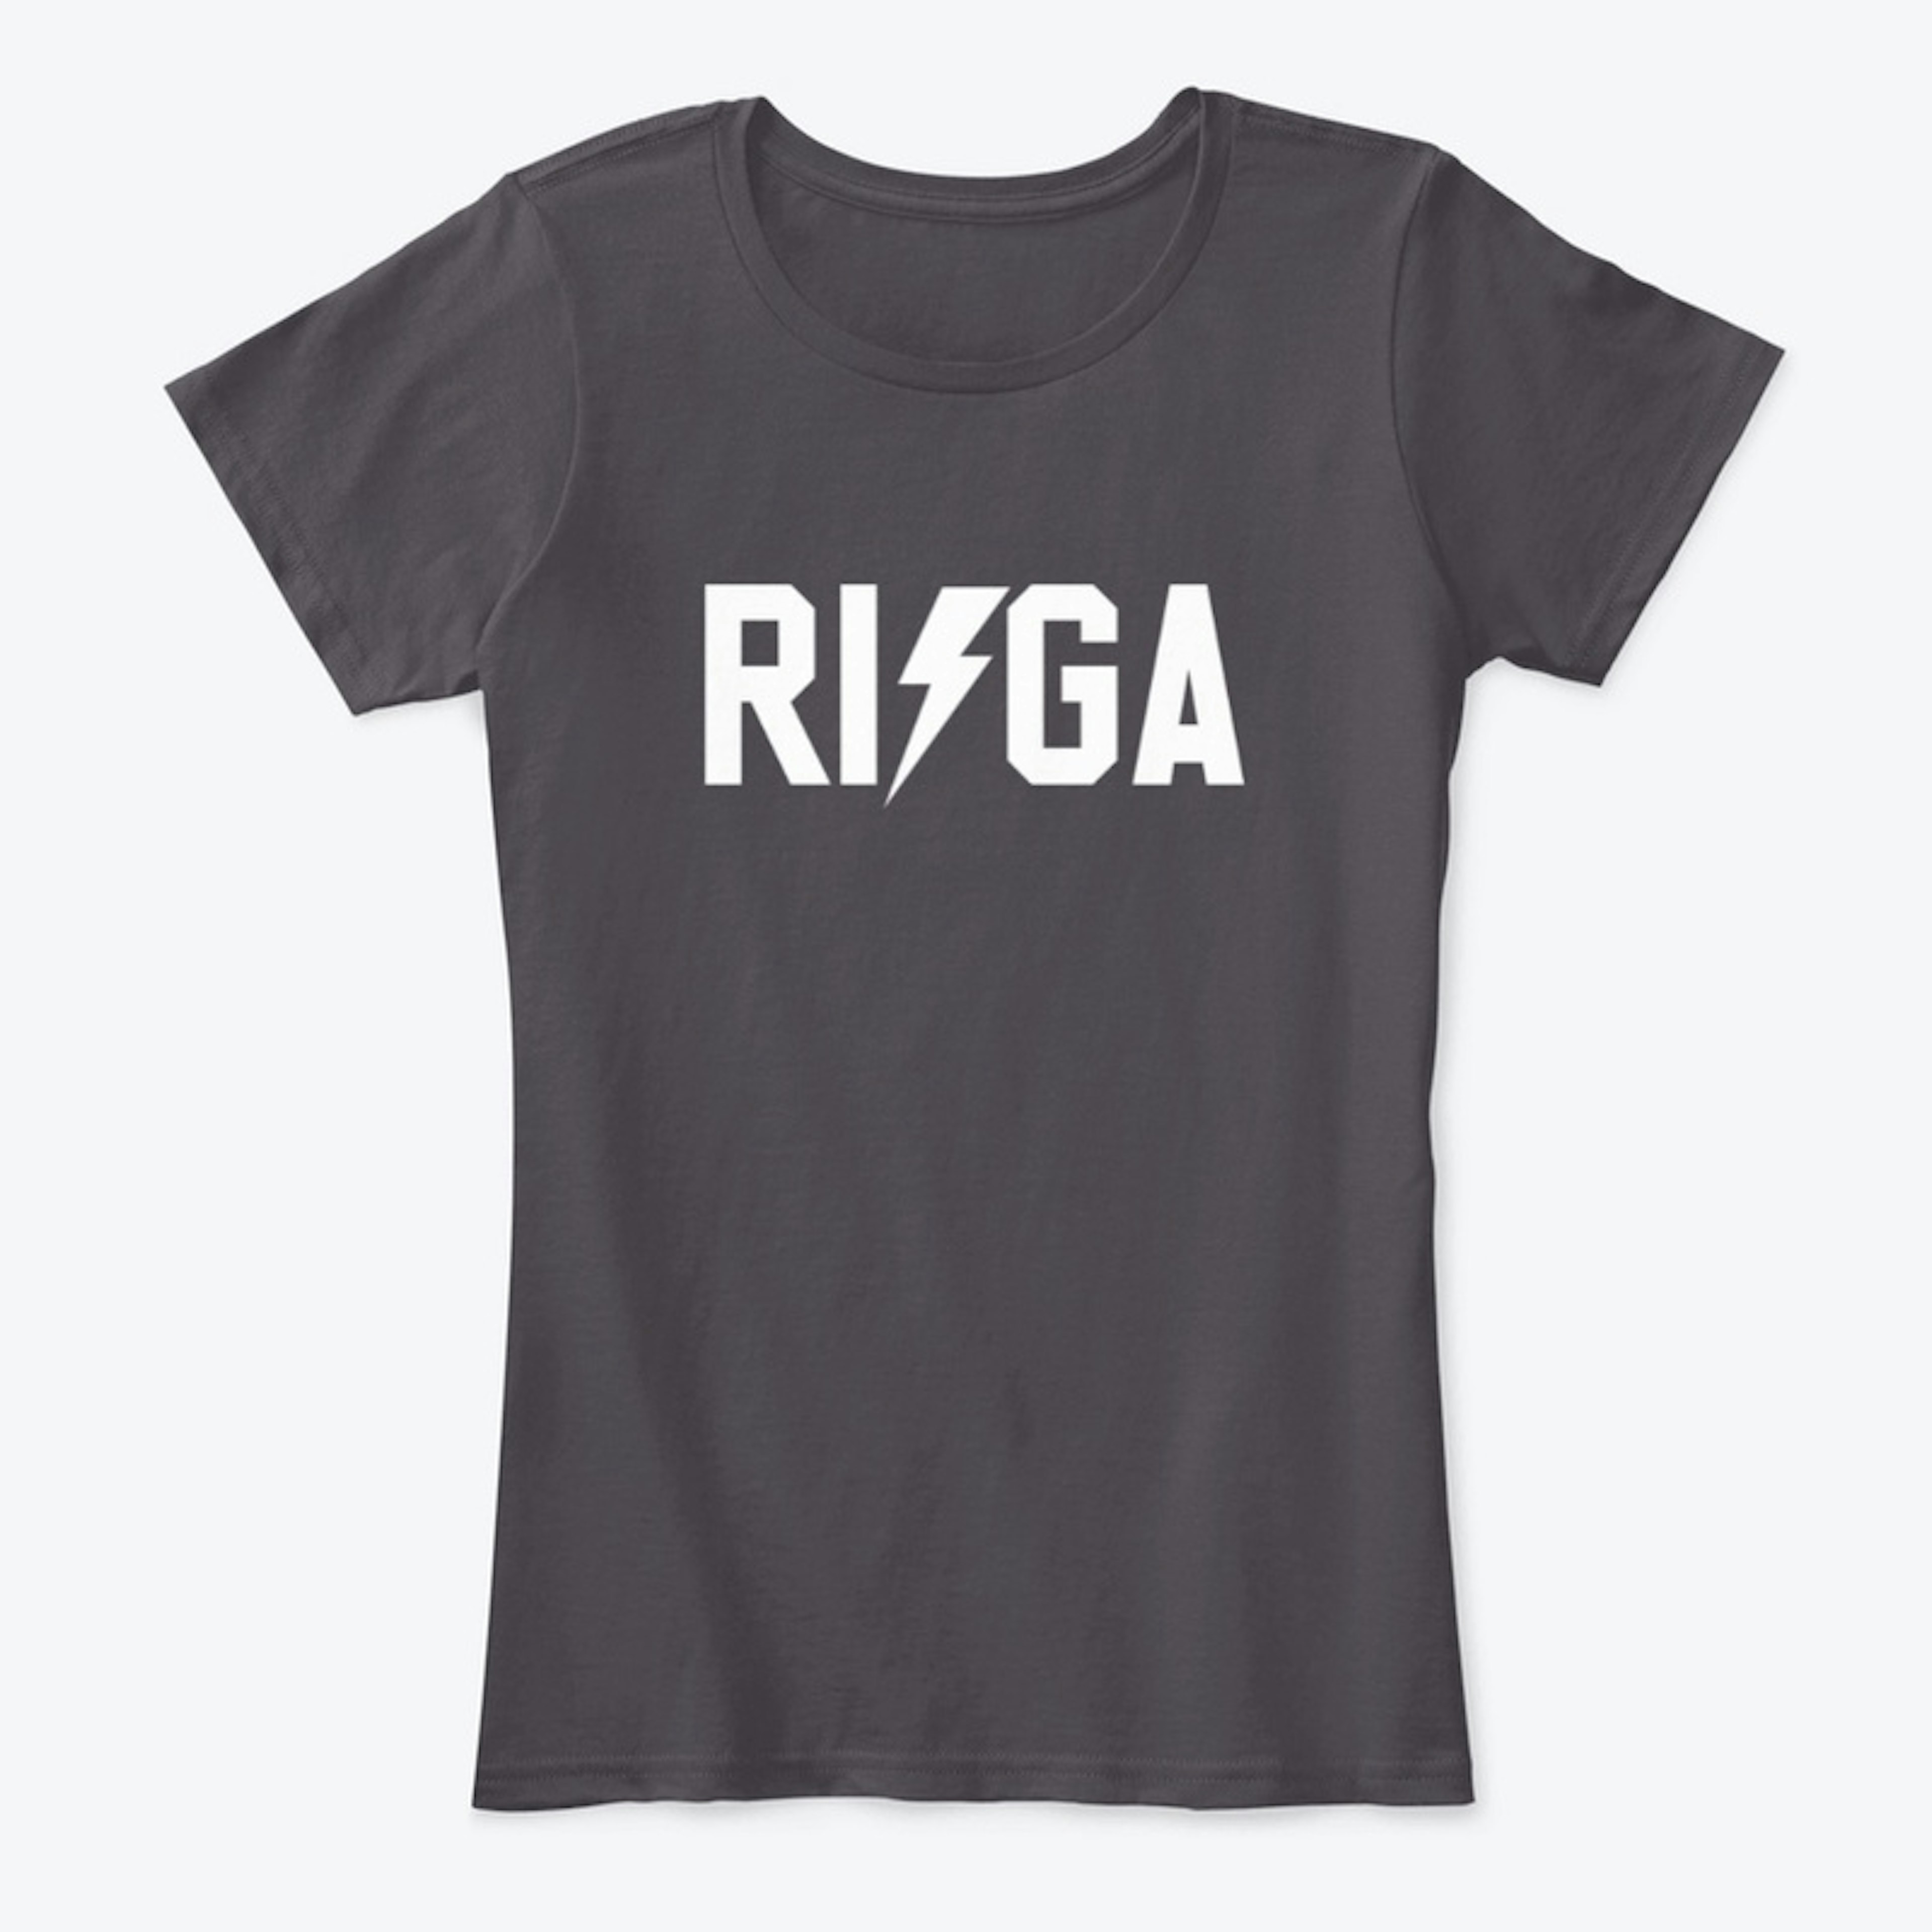 RIGA Lightning Bolt T-Shirt 